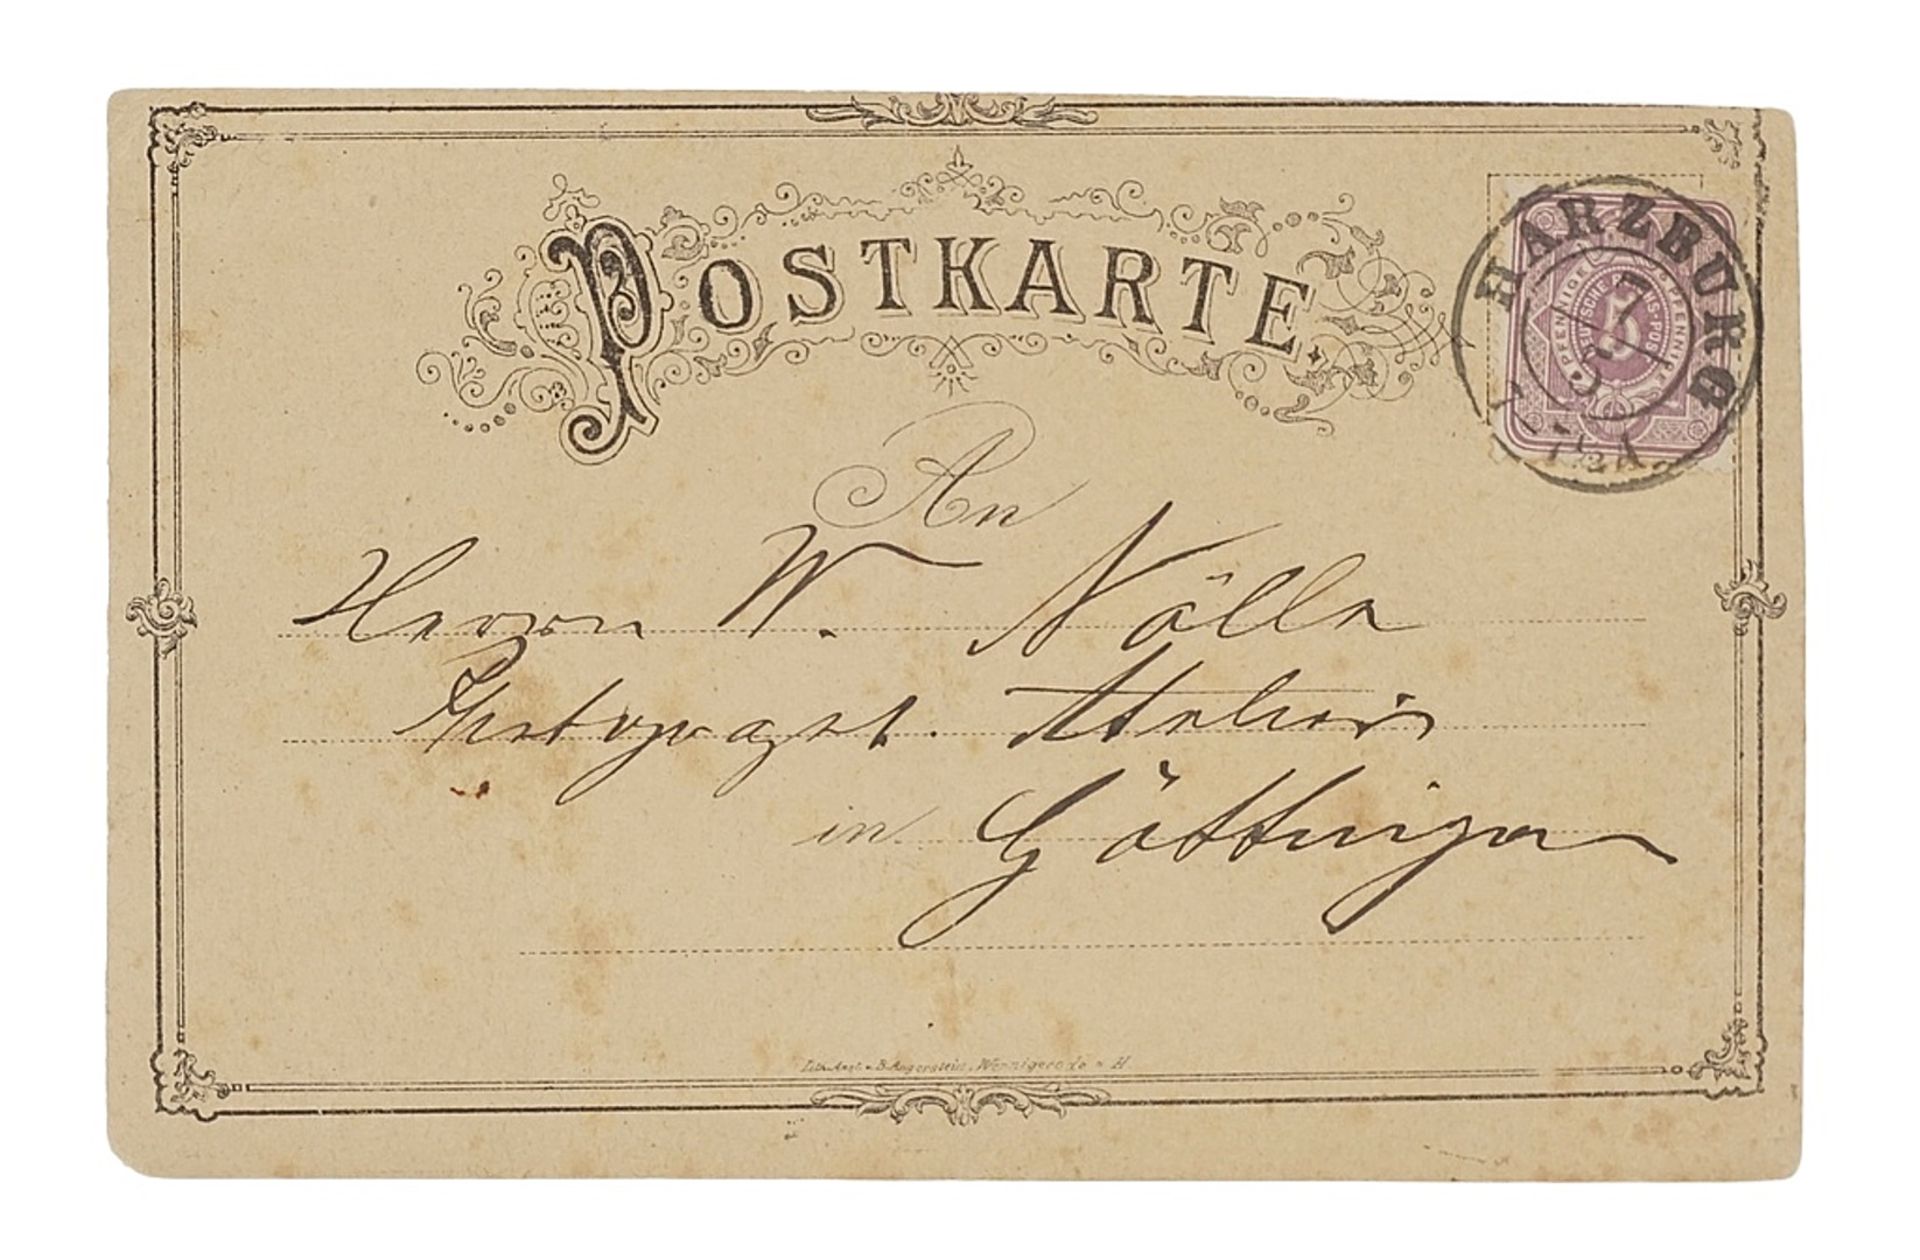 Lithografische Werkstatt Angerstein, Wernigerode, postcard, around 1870 - Image 2 of 2